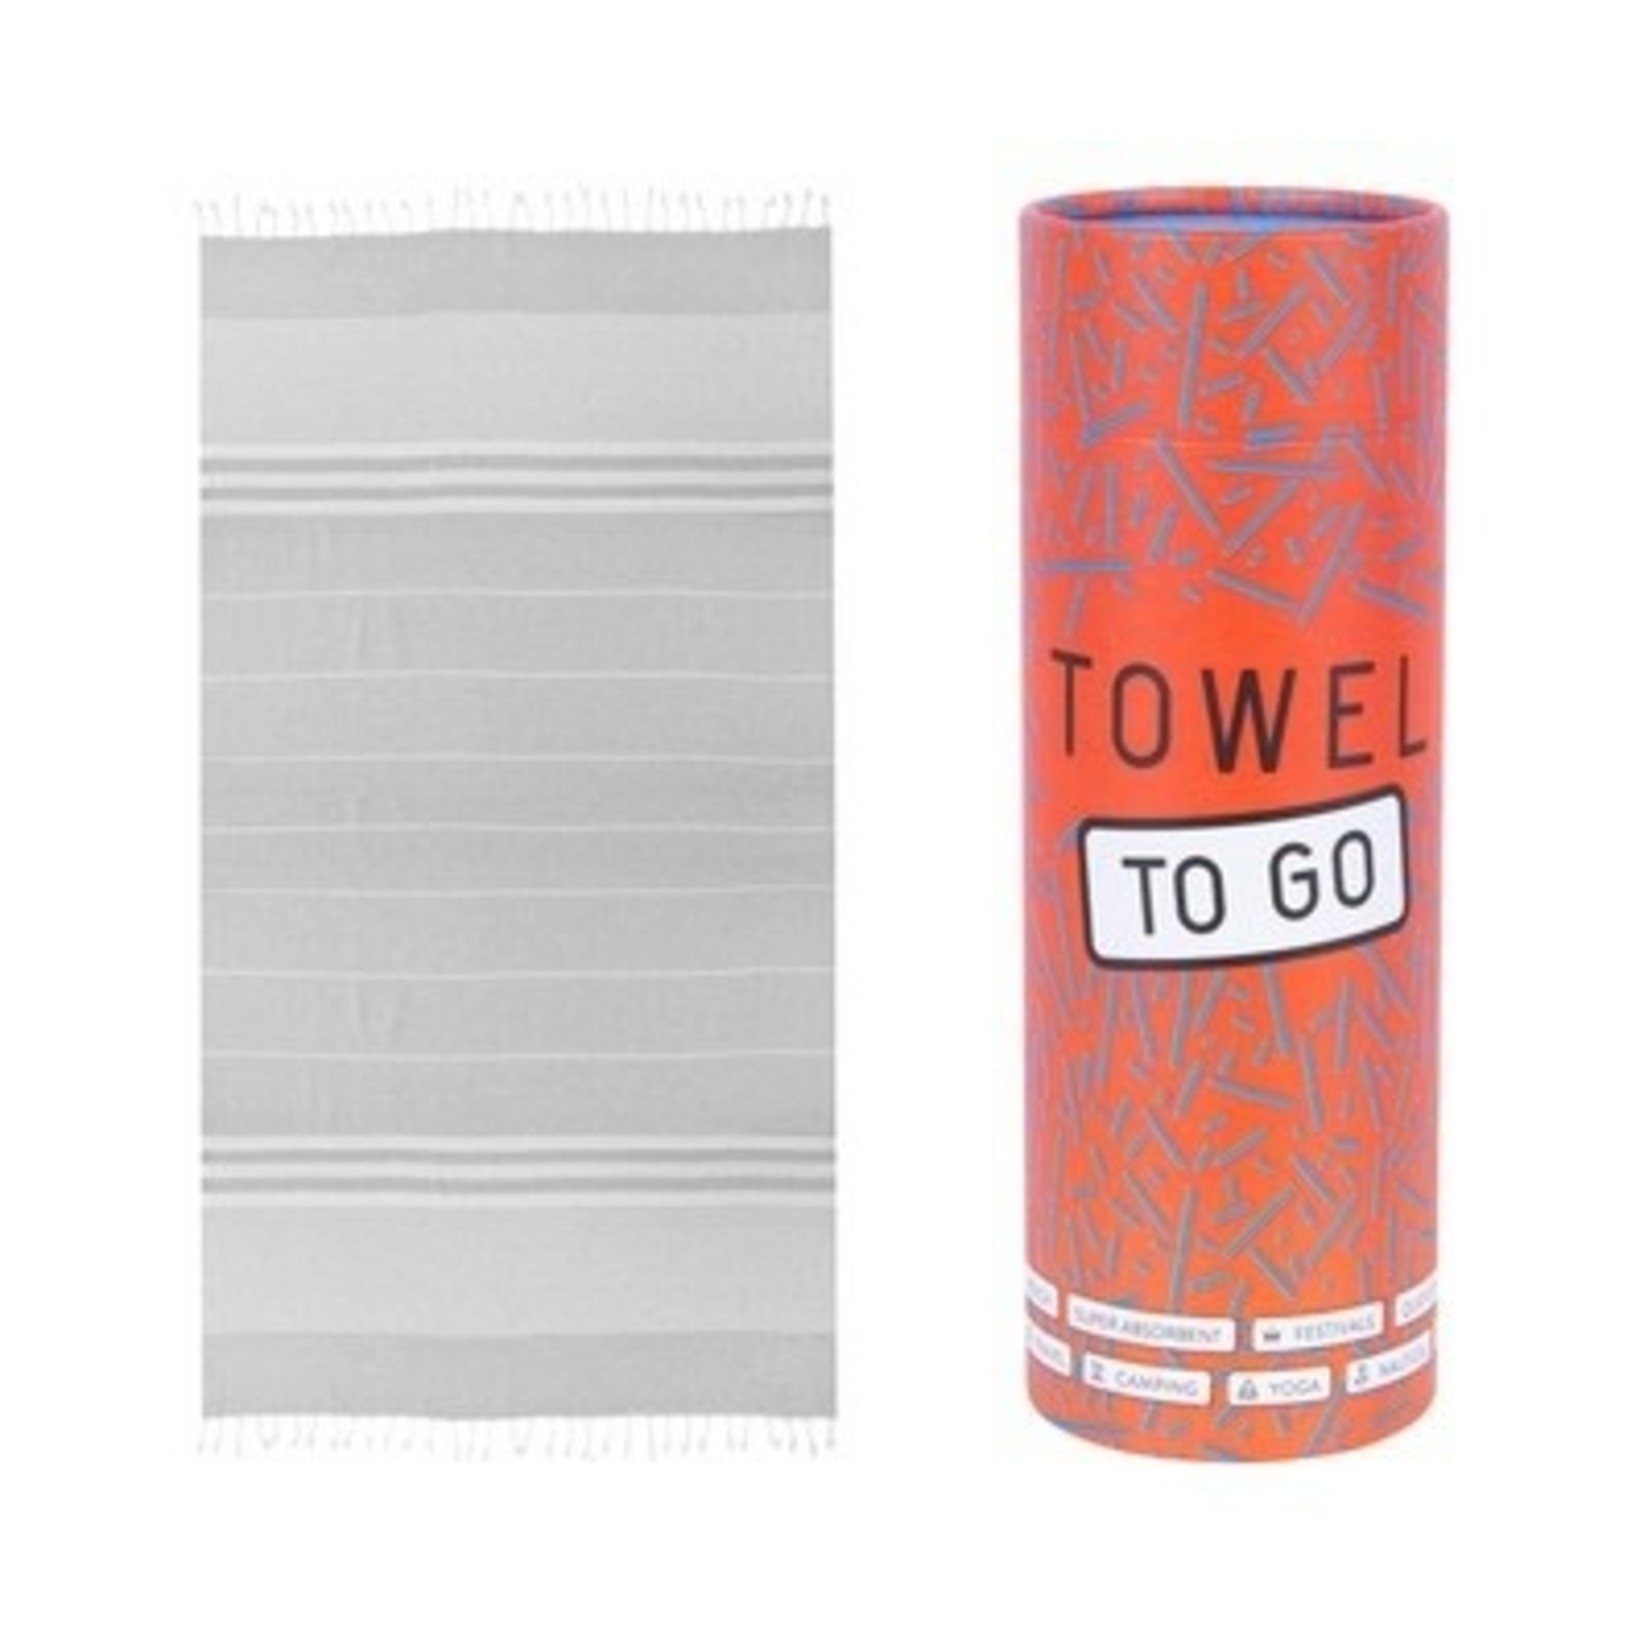 TOWEL TO GO Towel to go Malibu grey 100%BW oeko tex